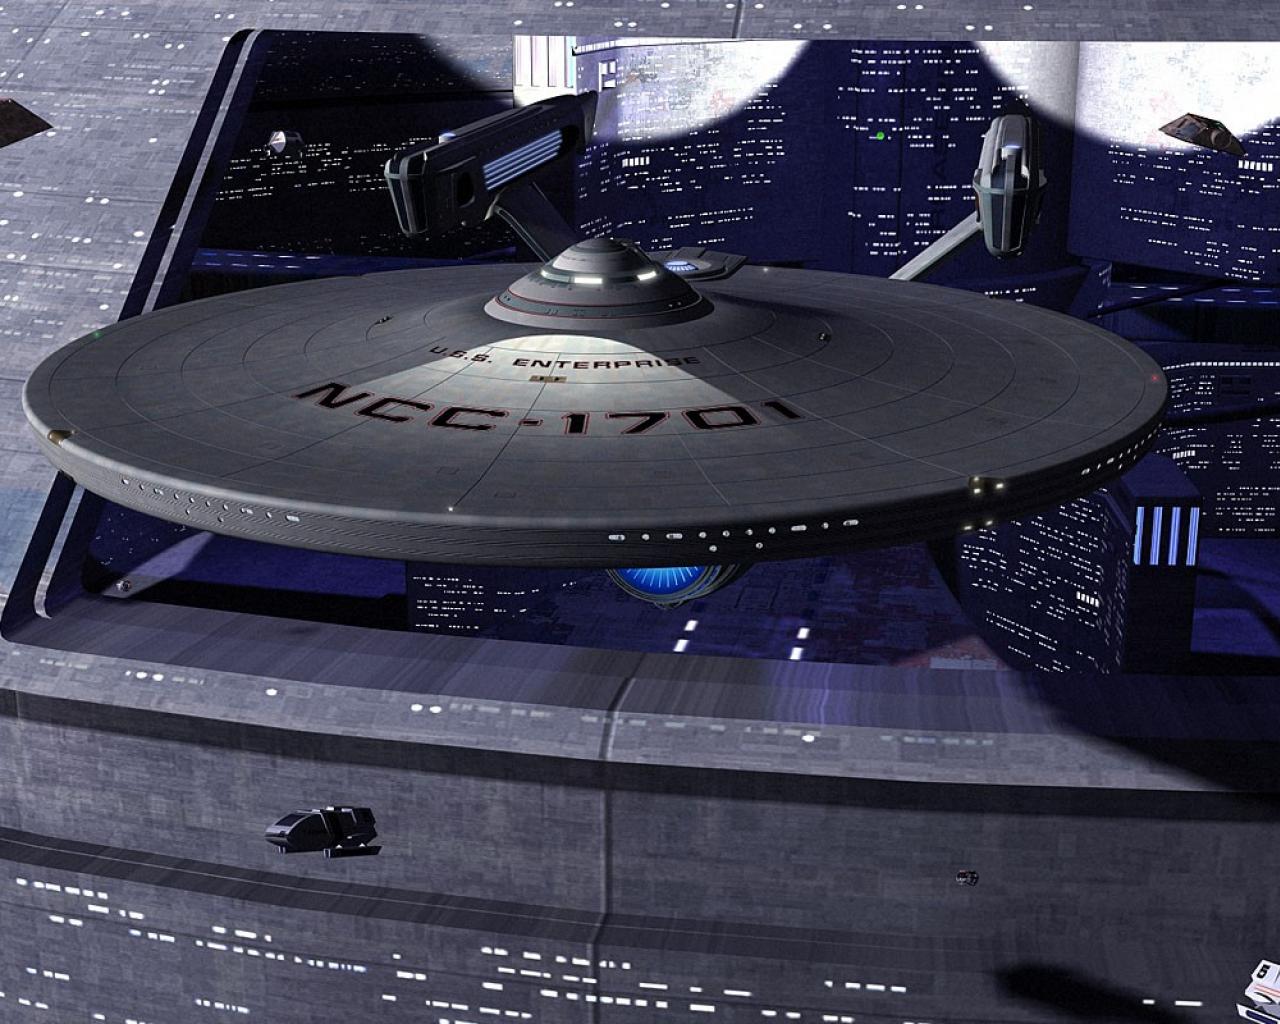 Movies Star Trek Spaceships Vehicles Uss Enterprise Normal